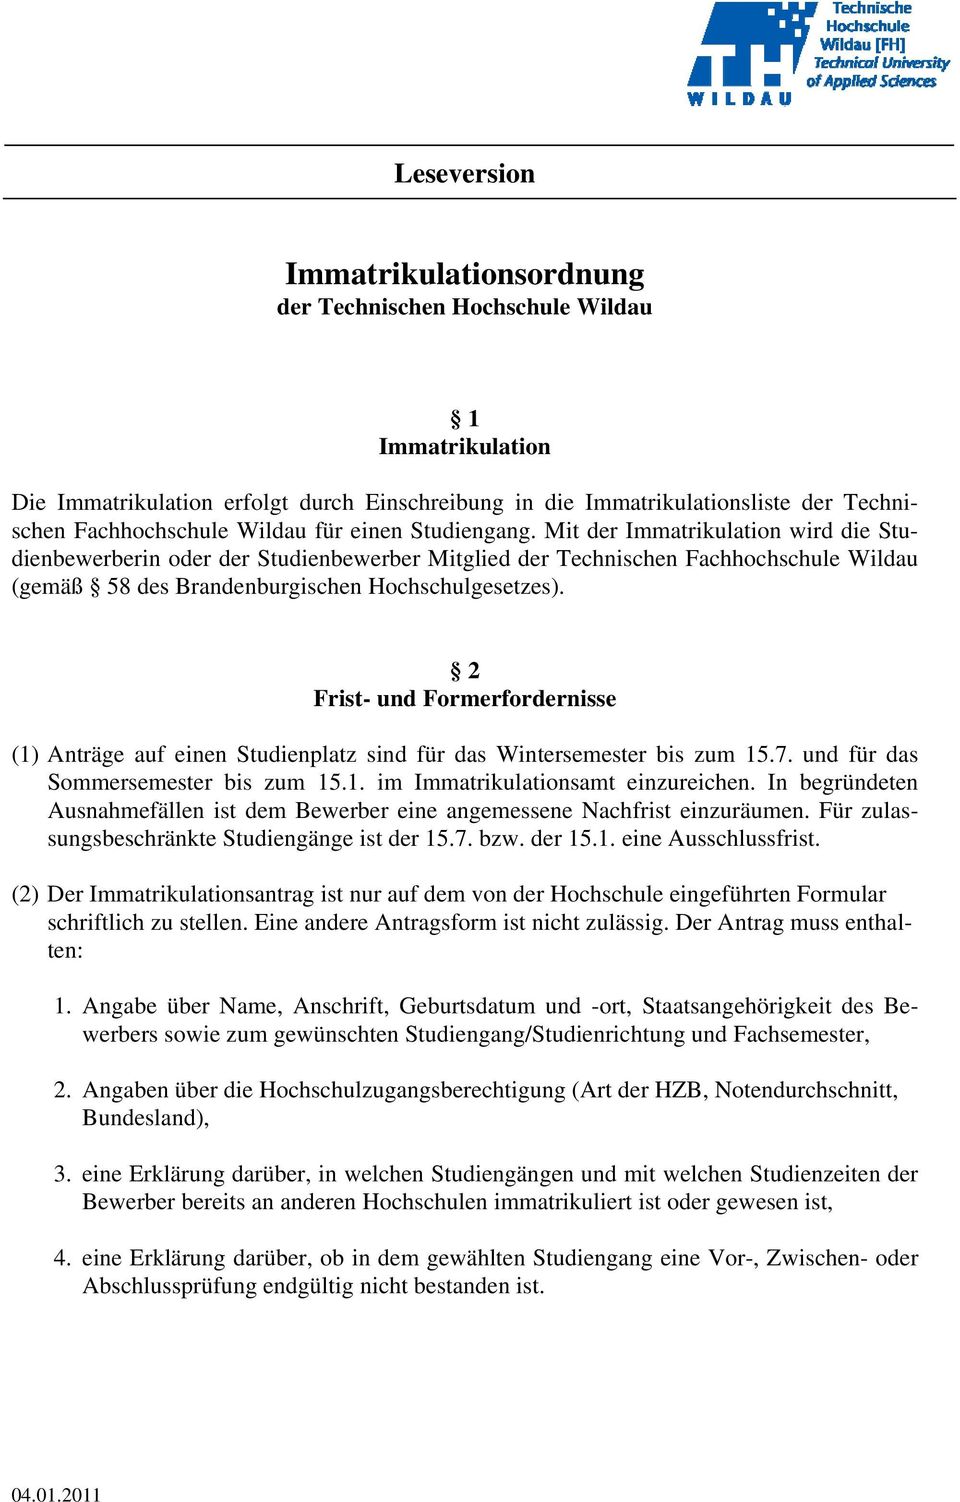 Mit der Immatrikulation wird die Studienbewerberin oder der Studienbewerber Mitglied der Technischen Fachhochschule Wildau (gemäß 58 des Brandenburgischen Hochschulgesetzes).